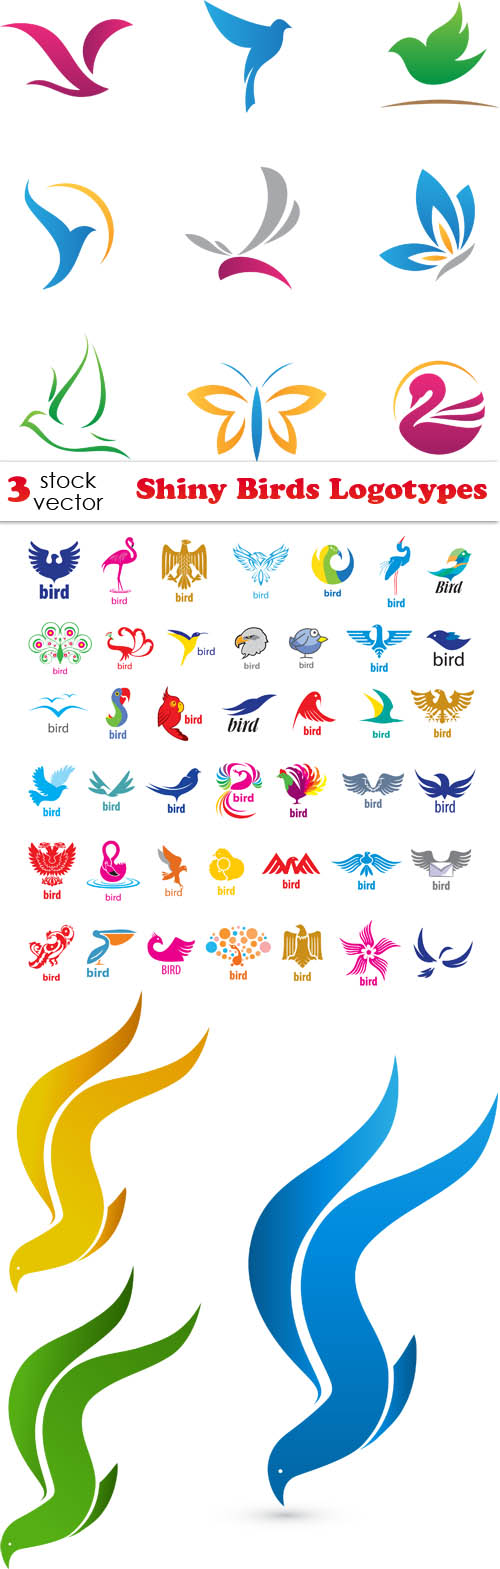 Vectors - Shiny Birds Logotypes 3